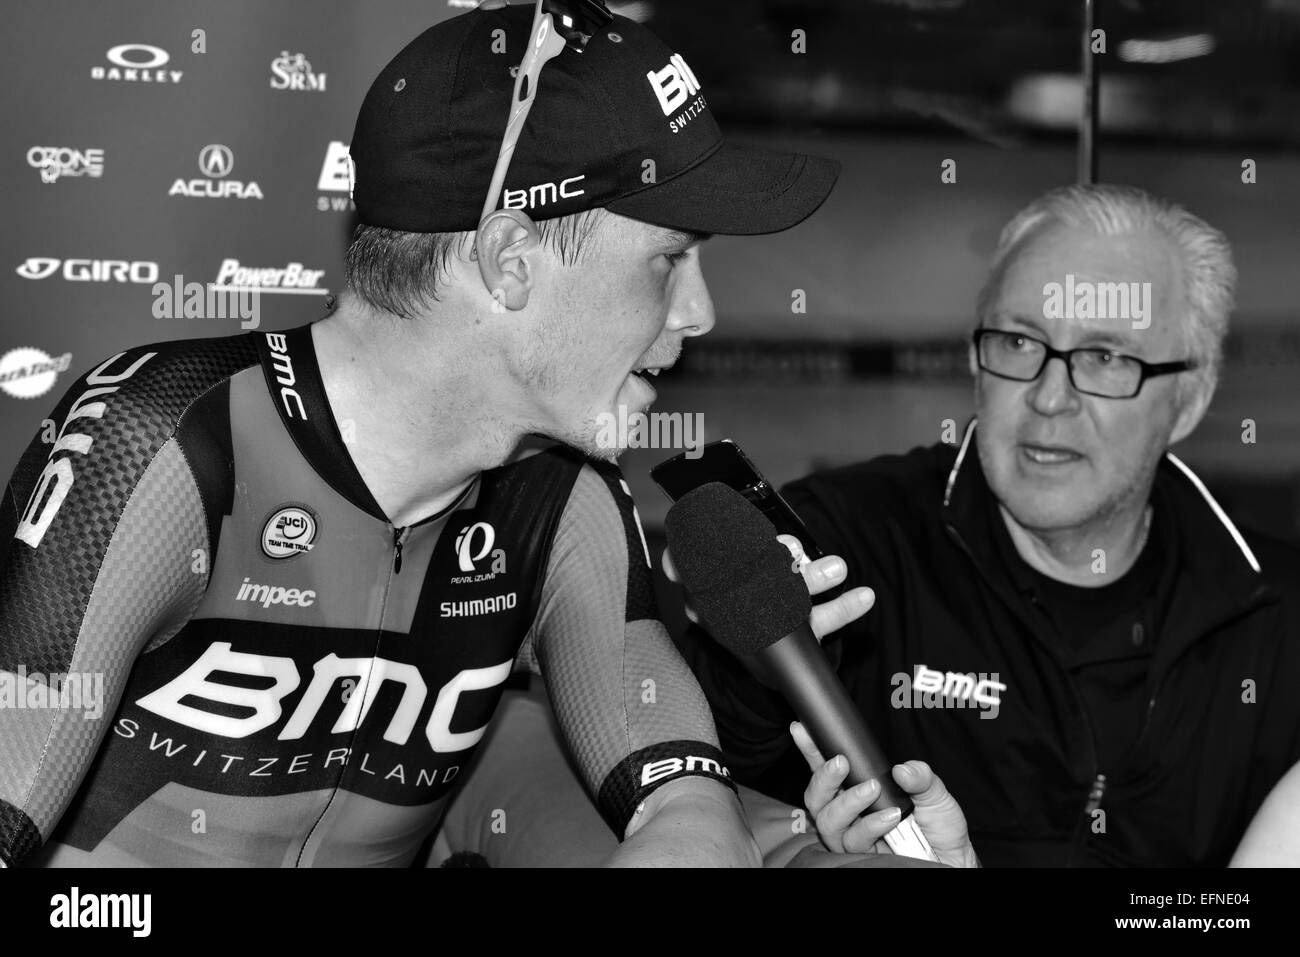 Neuchâtel, Suisse. Le 08 février, 2015. Tentative de Record du Monde UCI Heure Rohan Dennis - BMC Racing Team Crédit : Guy Swarbrick/trackcycling.net/Alamy Live News Banque D'Images